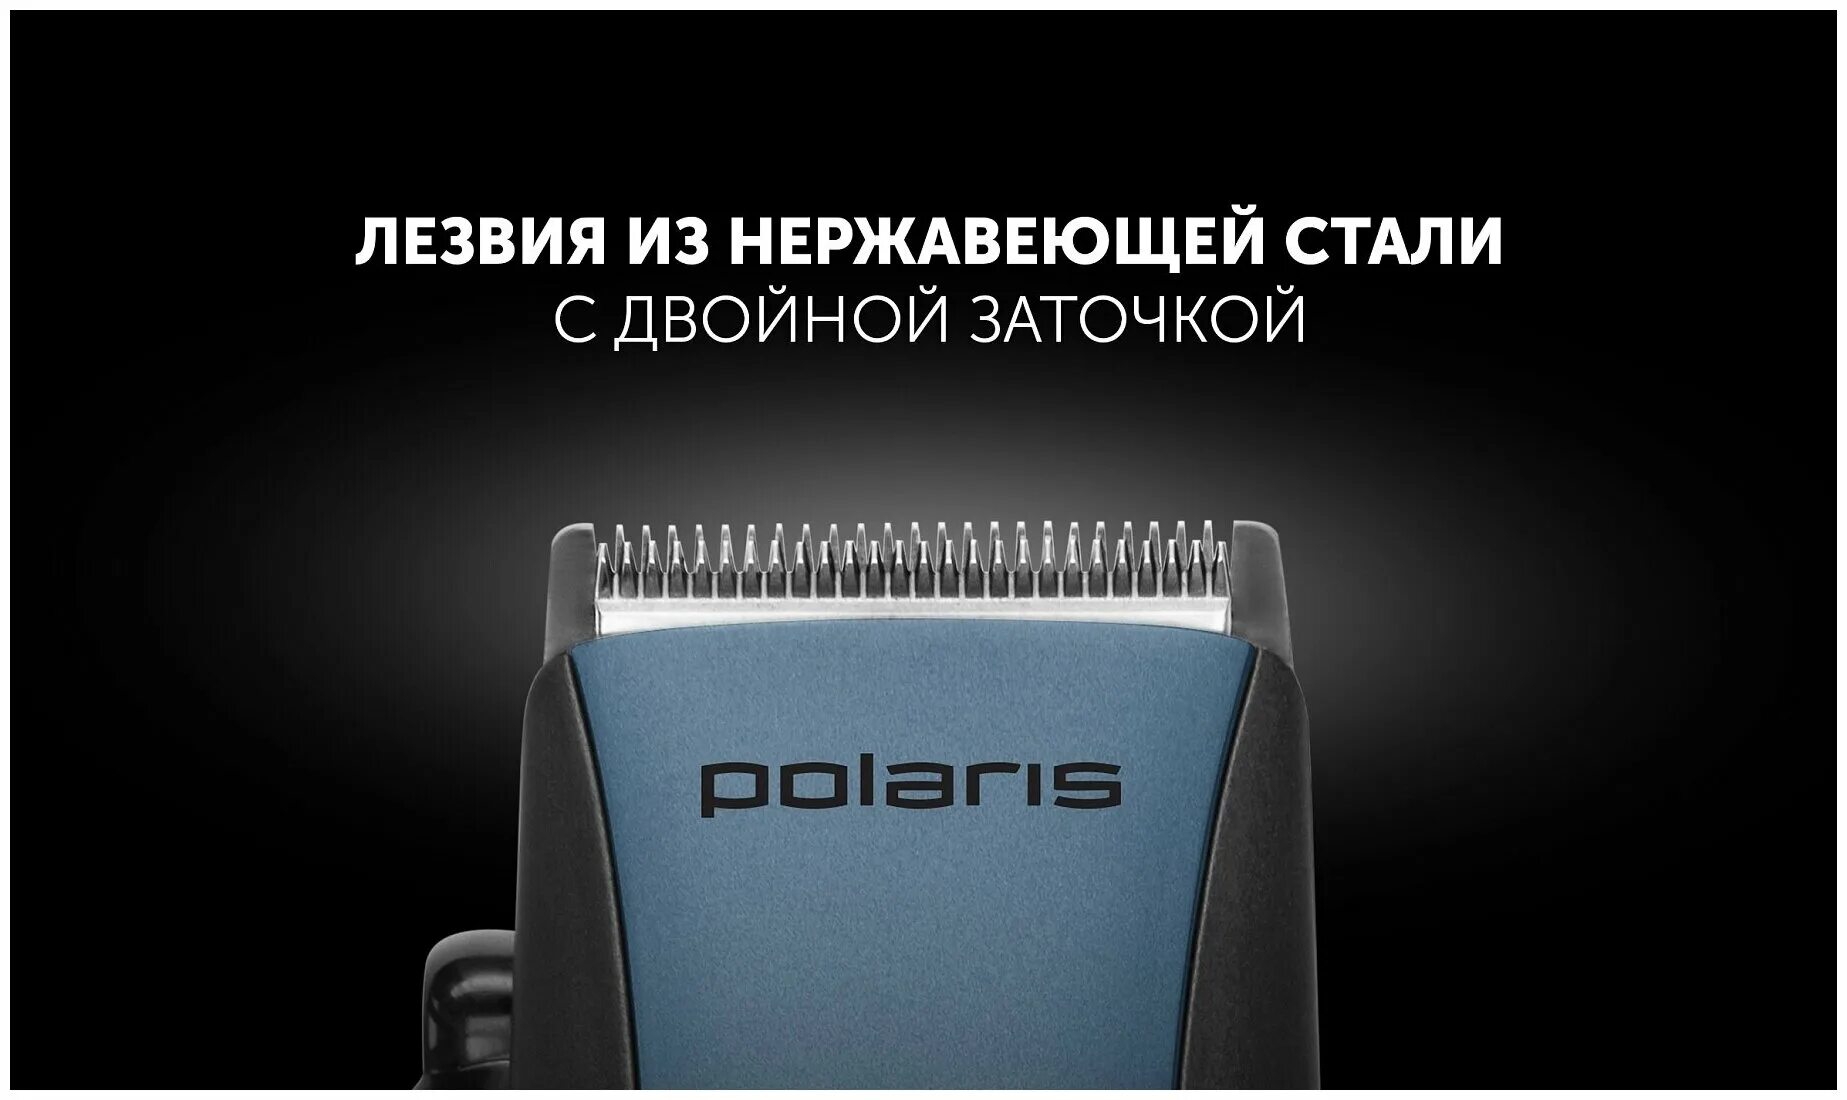 Polaris dreams collection. Машинка для стрижки Polaris PHC 0924. Машинка для стрижки Polaris PHC 0924 синий/черный 9вт (насадок в компл:4шт). Машинка для стрижки волос Polaris PHC 2104. Машинка для стрижки Polaris PNS 0 5 0 2.